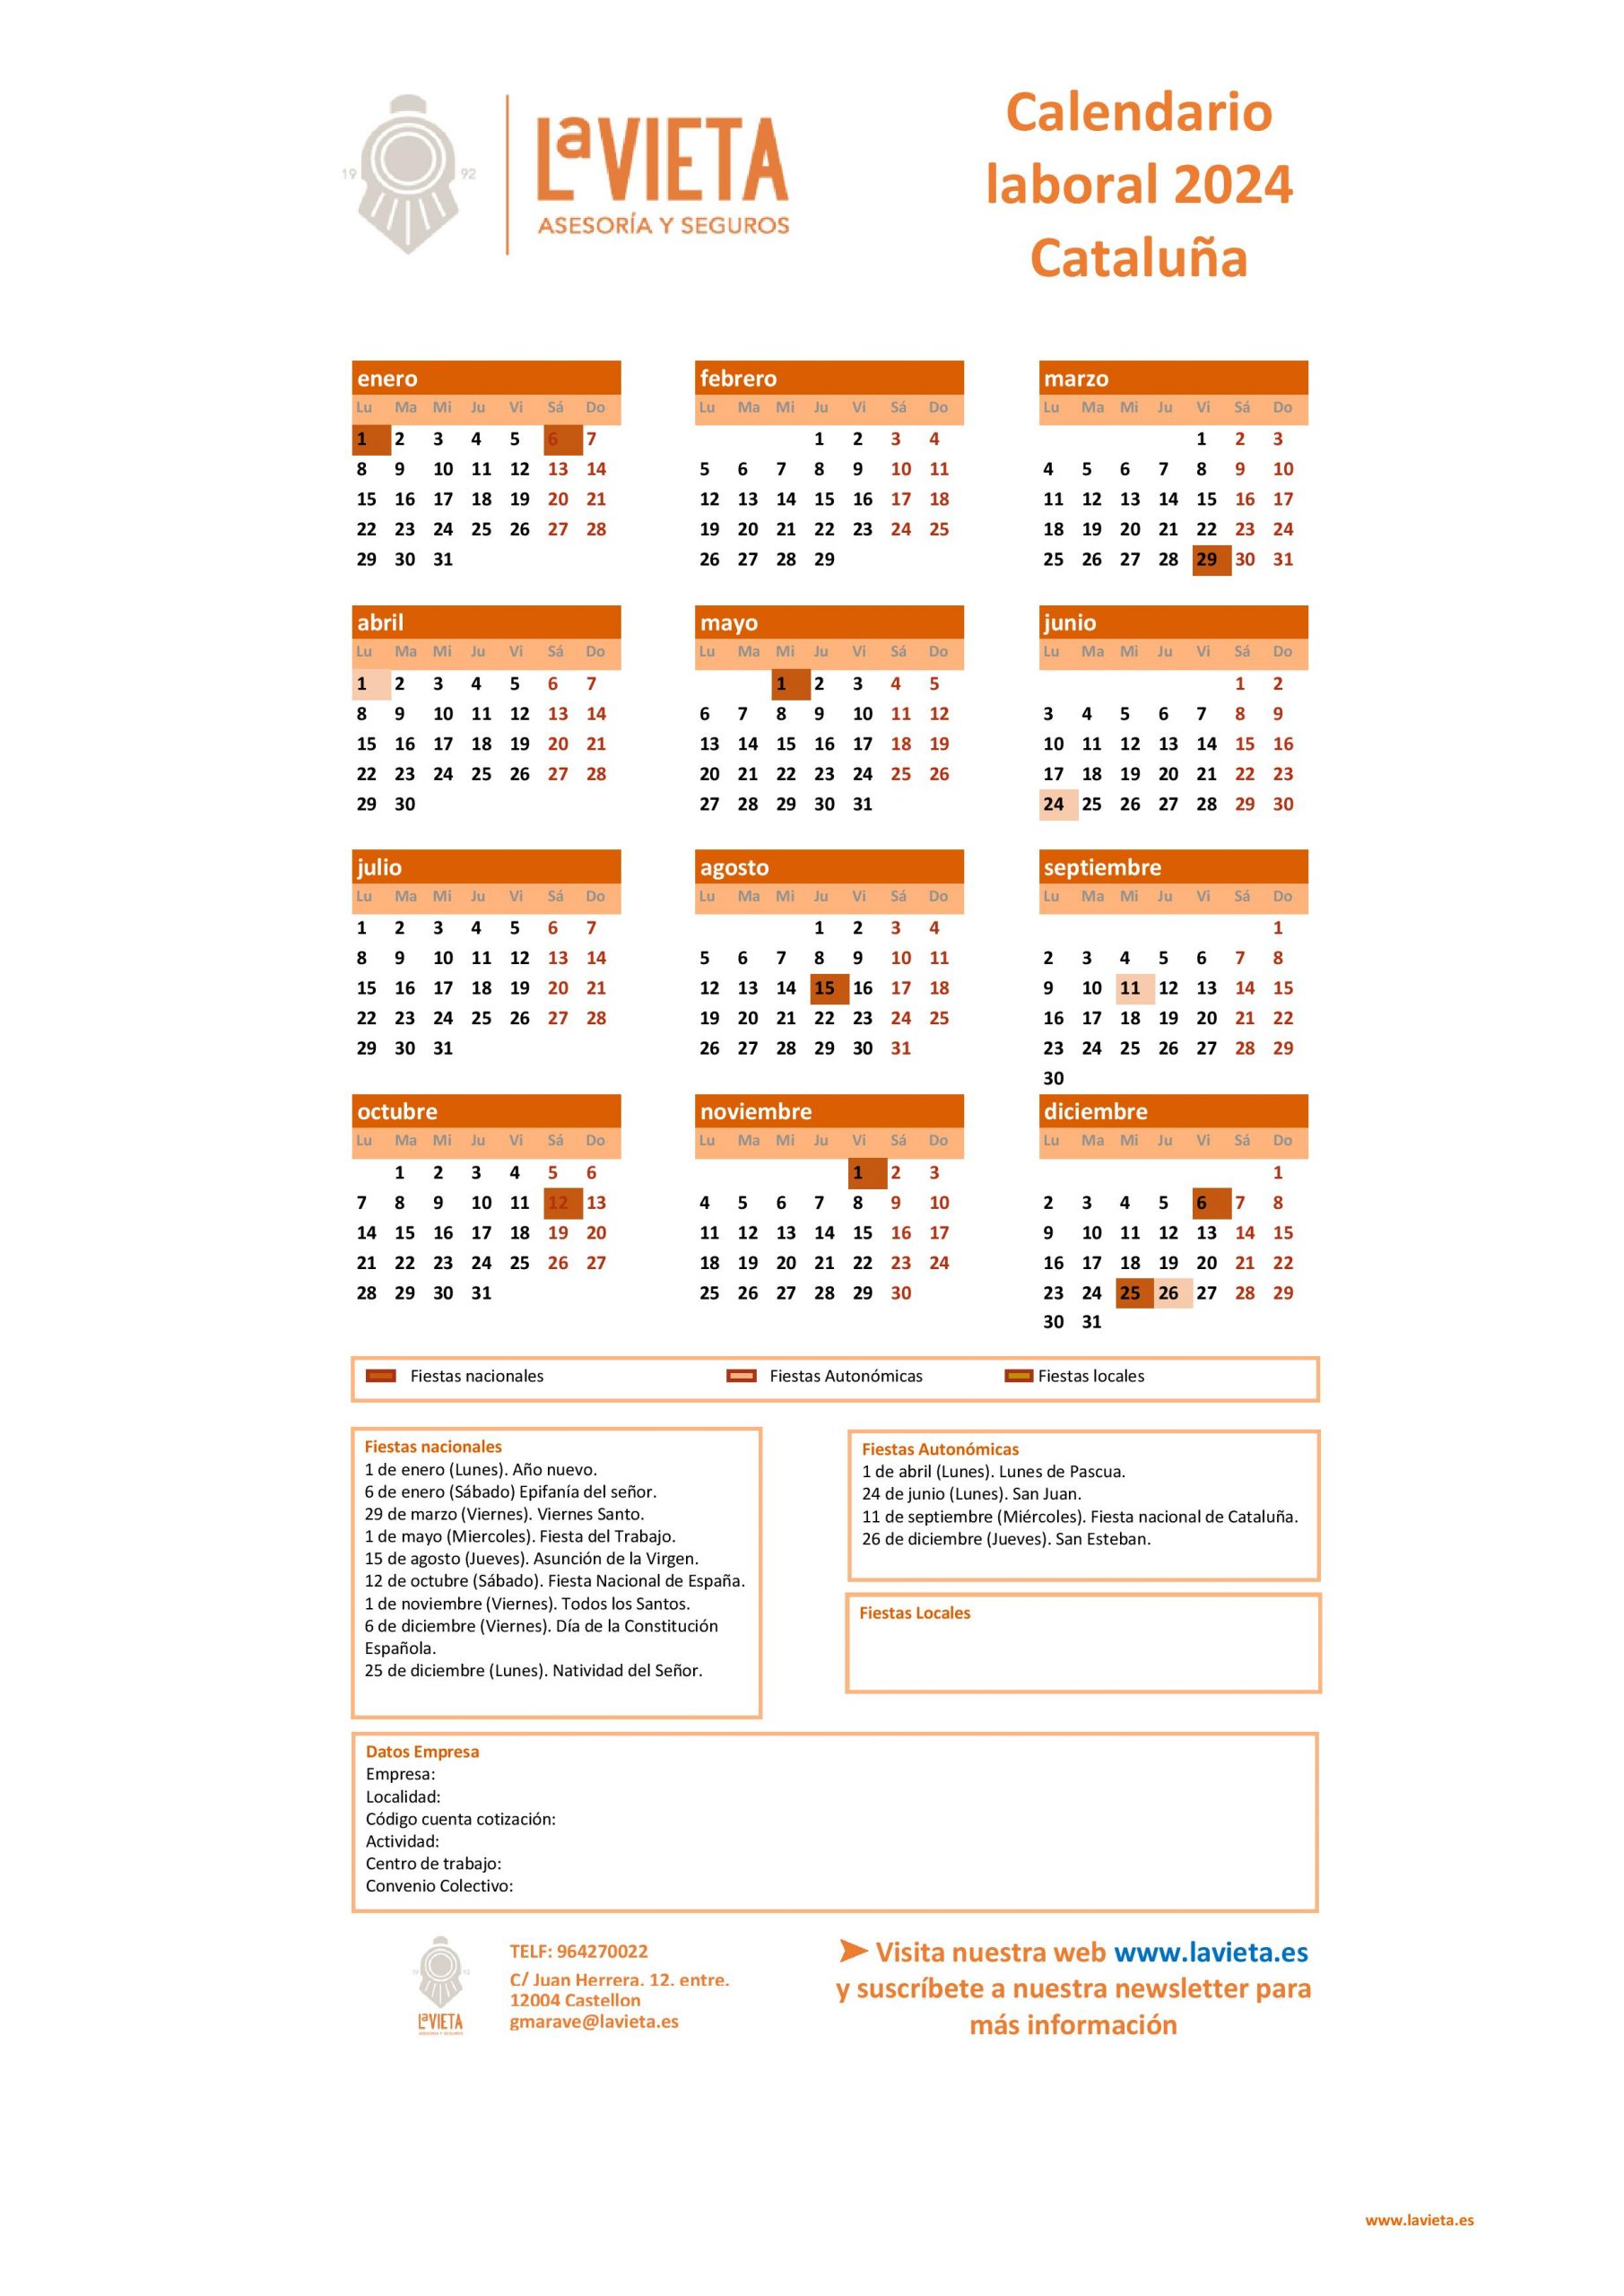 Calendario laboral de Cataluña 2024 en PDF para imprimir